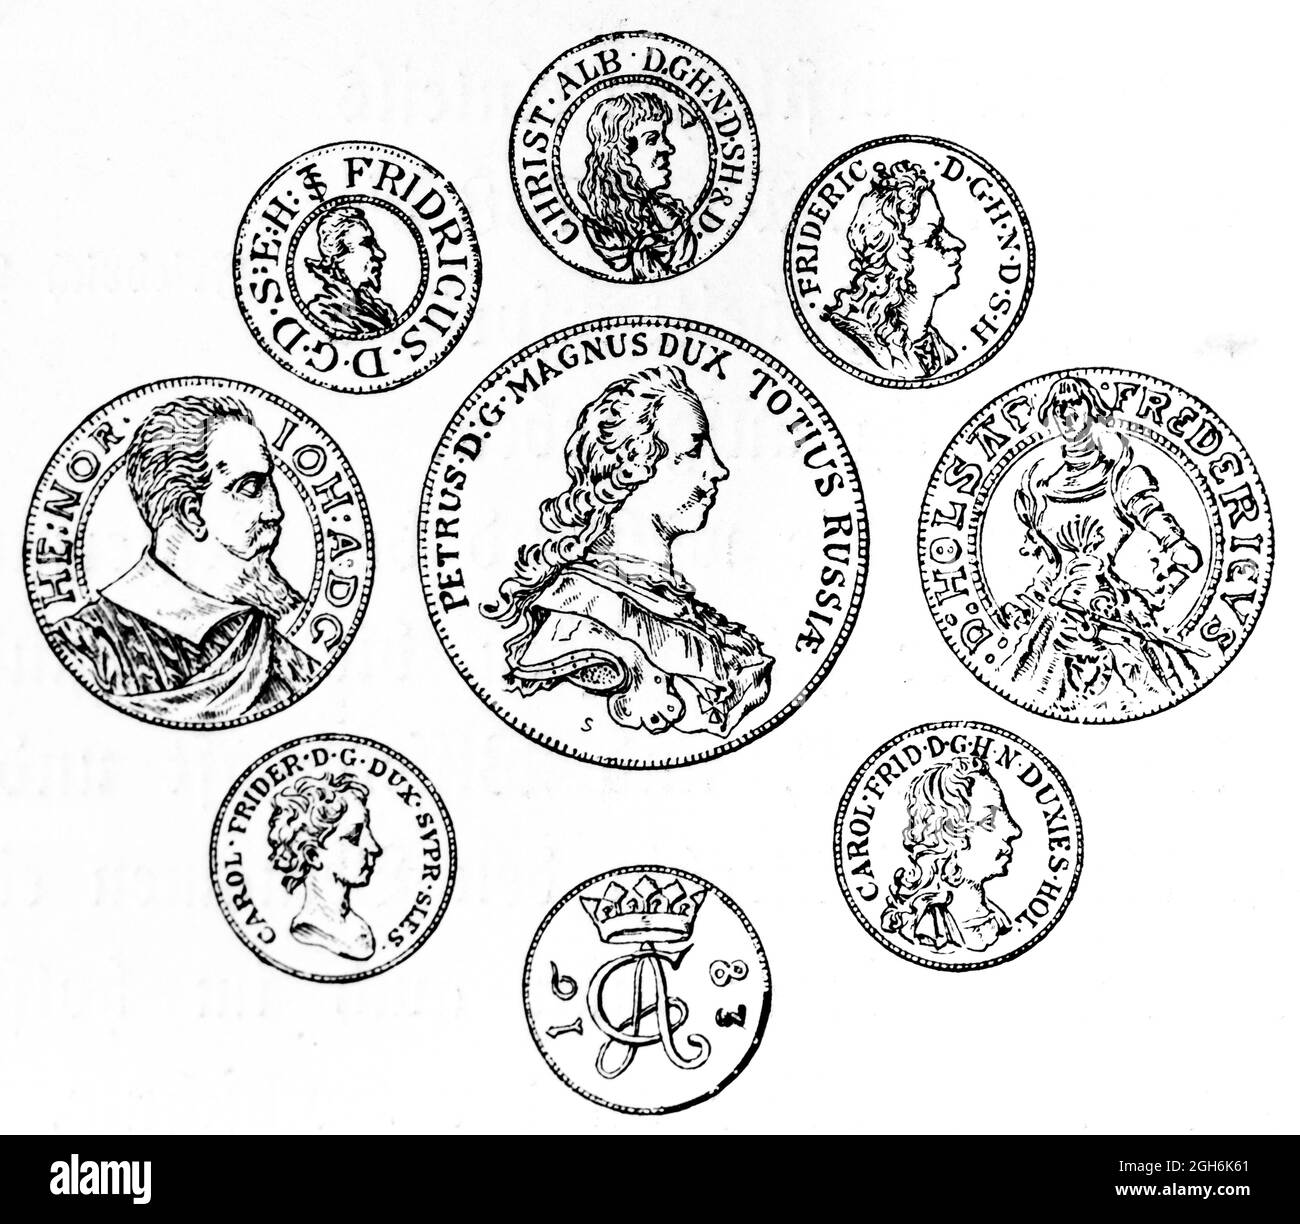 Monete internazionali con tratti di persone del Dukedom Holstein, incisione storica del 1899, Kiel, Schleswig-Holstein, Germania settentrionale, Foto Stock